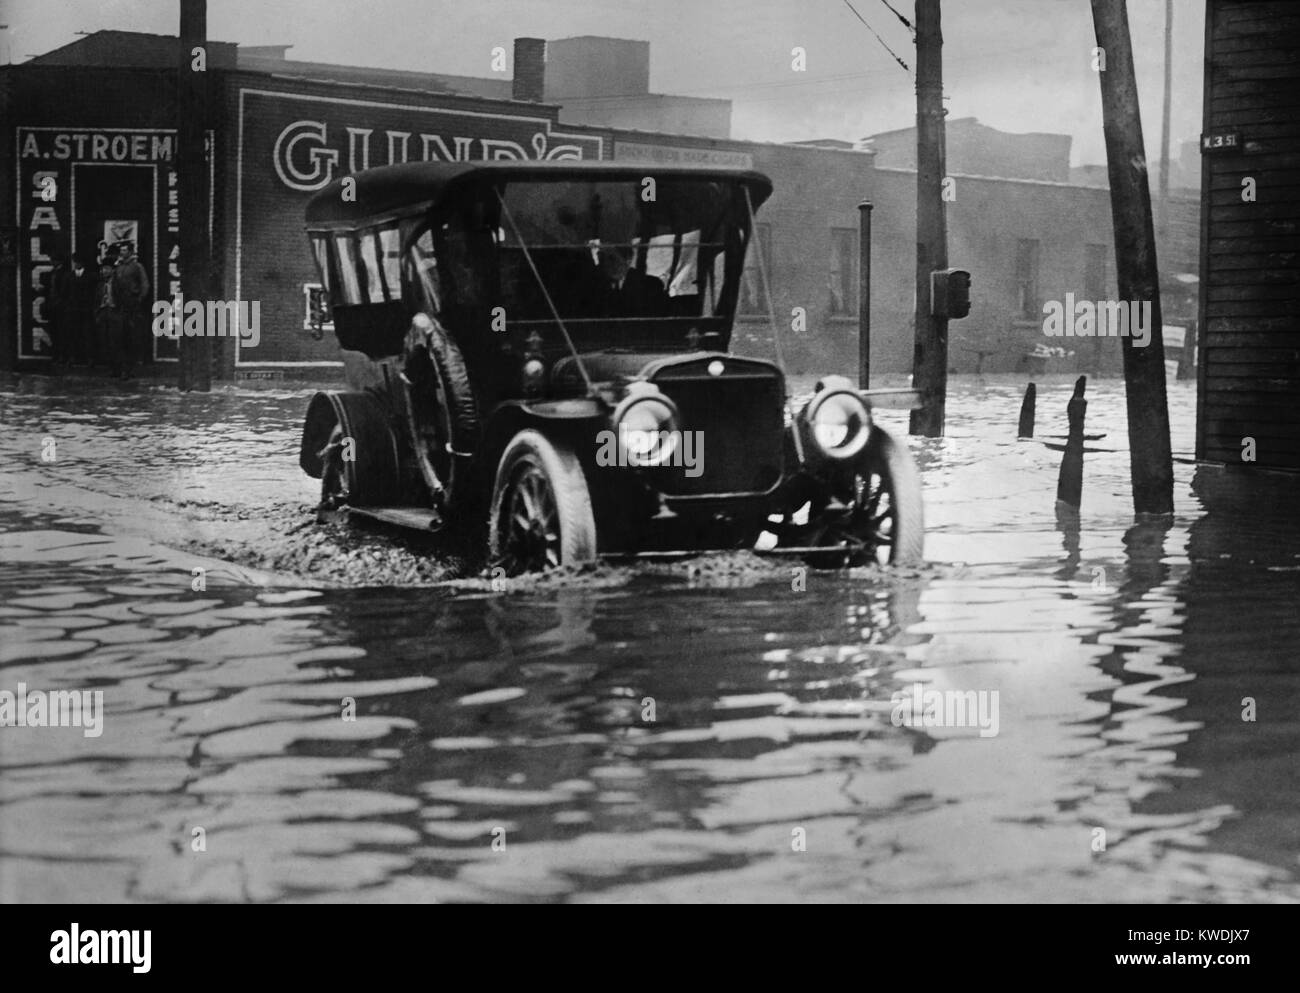 Un automóvil que se introduce a través de Axel alto agua sobre una calle Cleveland inundadas, probablemente en 1913. Los primeros coches fueron construidos con alta juegos para navegar por los ásperos caminos de la época. La gran inundación de 1913 fue Ohios mayores desastres climáticos de comienzos del siglo XX (BSLOC 2017 17 95) Foto de stock